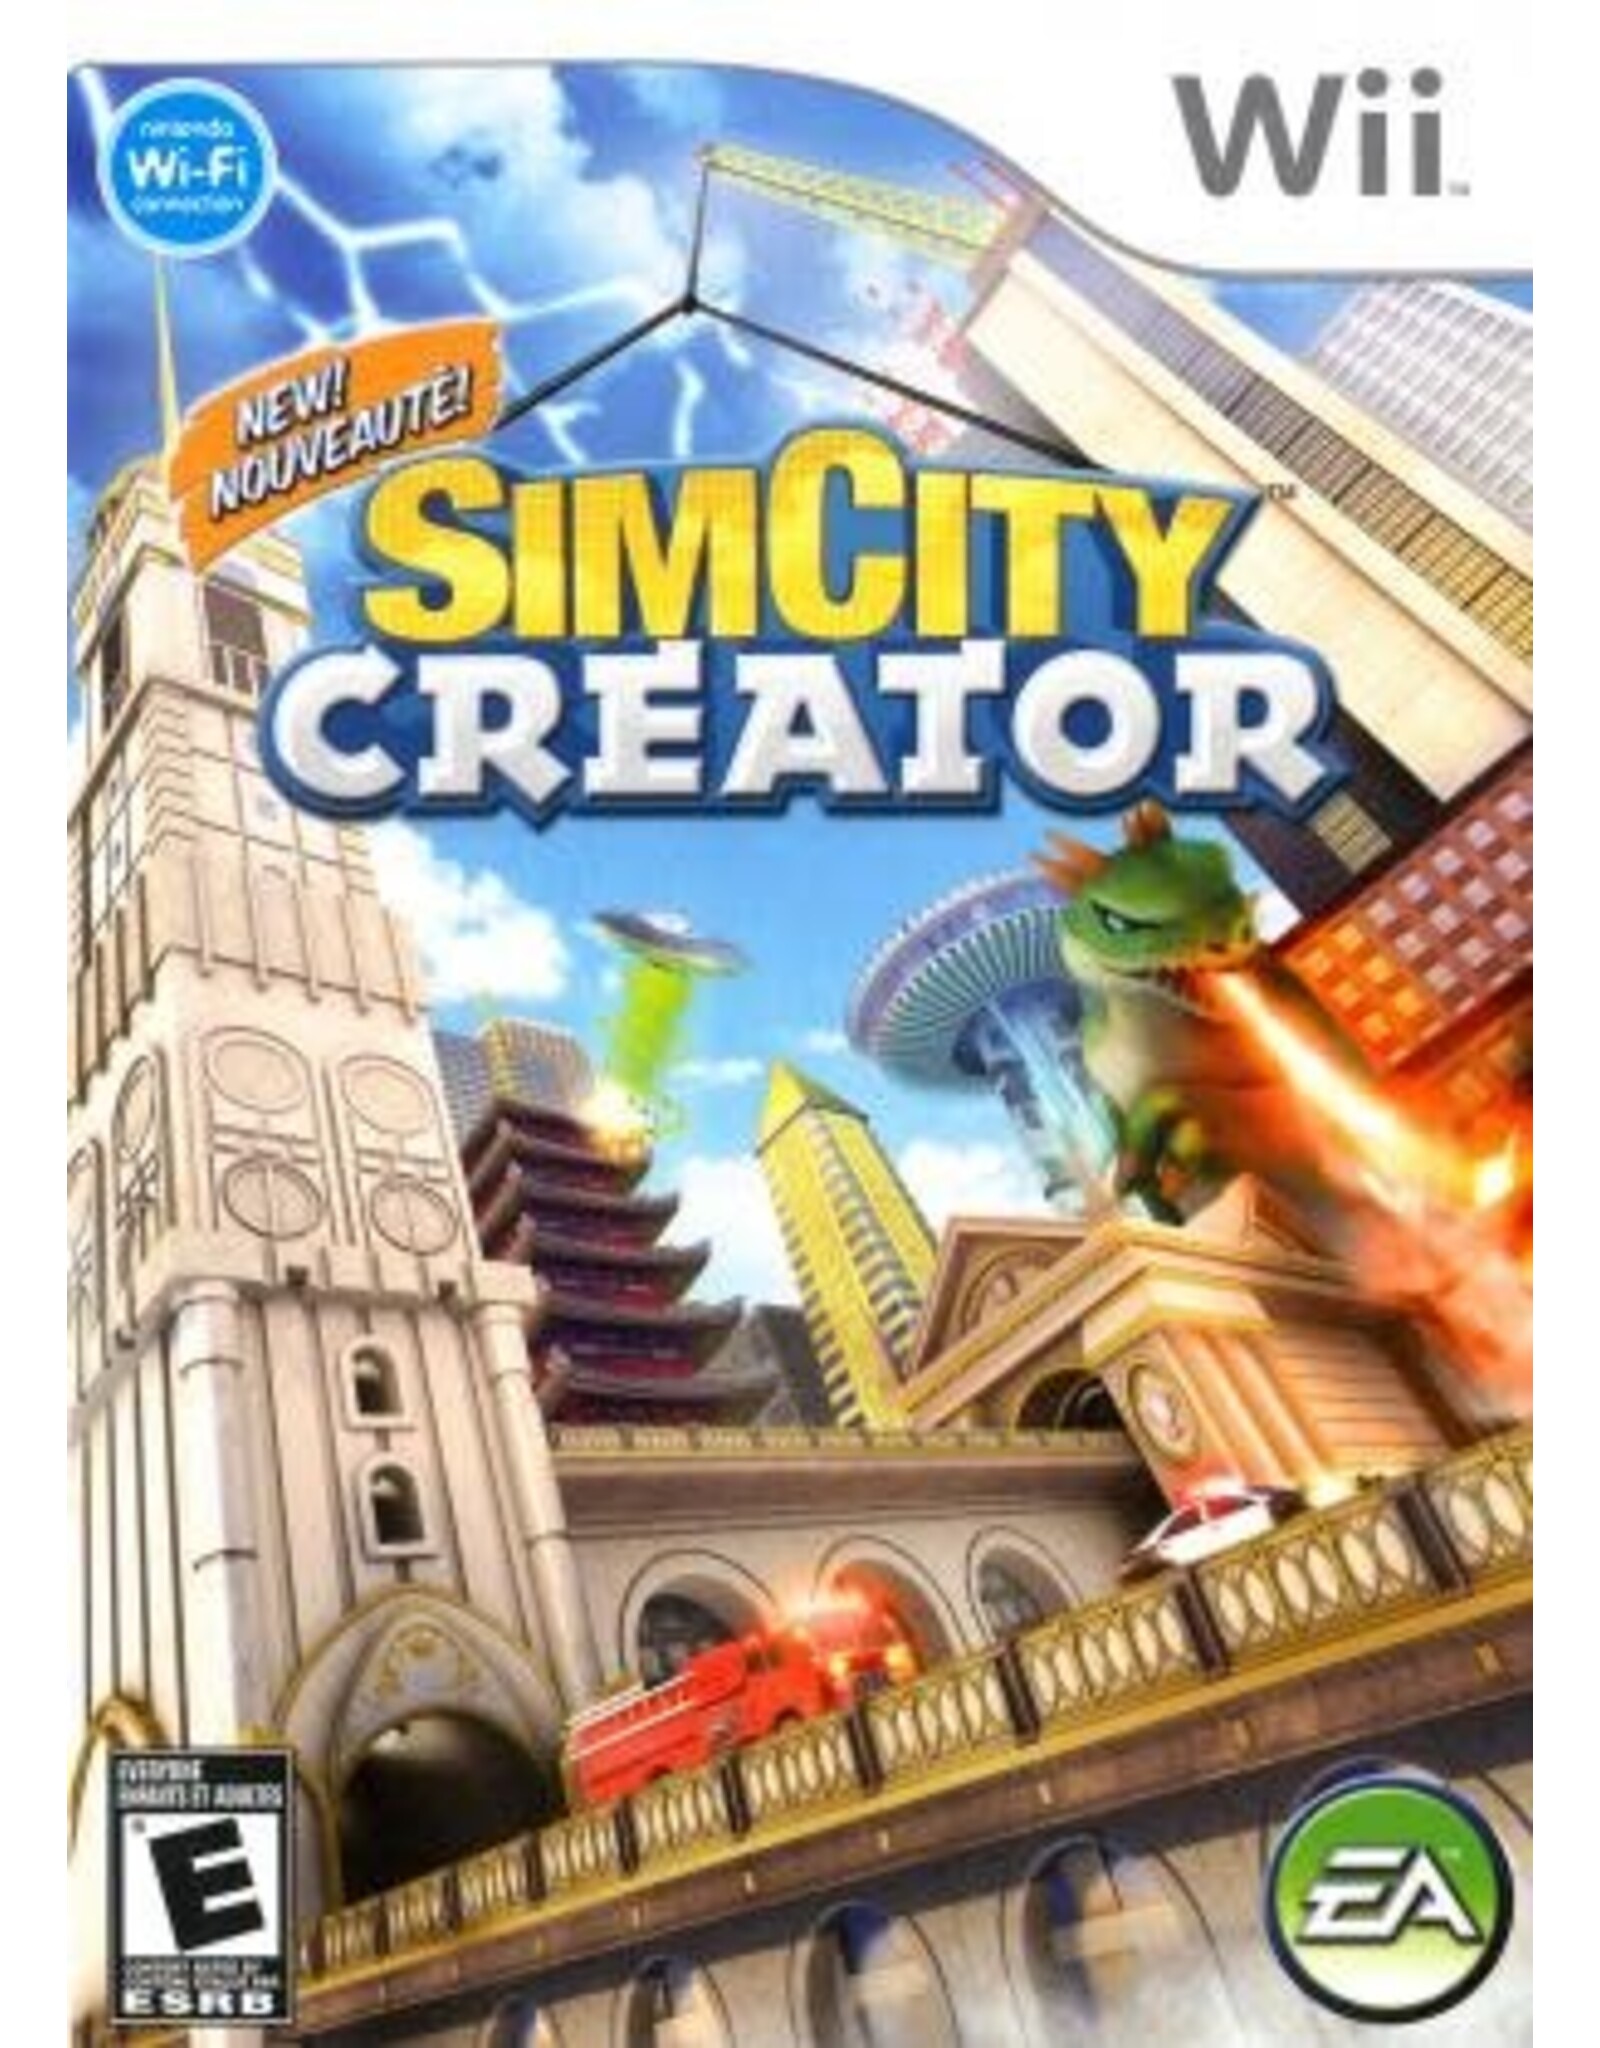 Wii SimCity Creator (CiB)